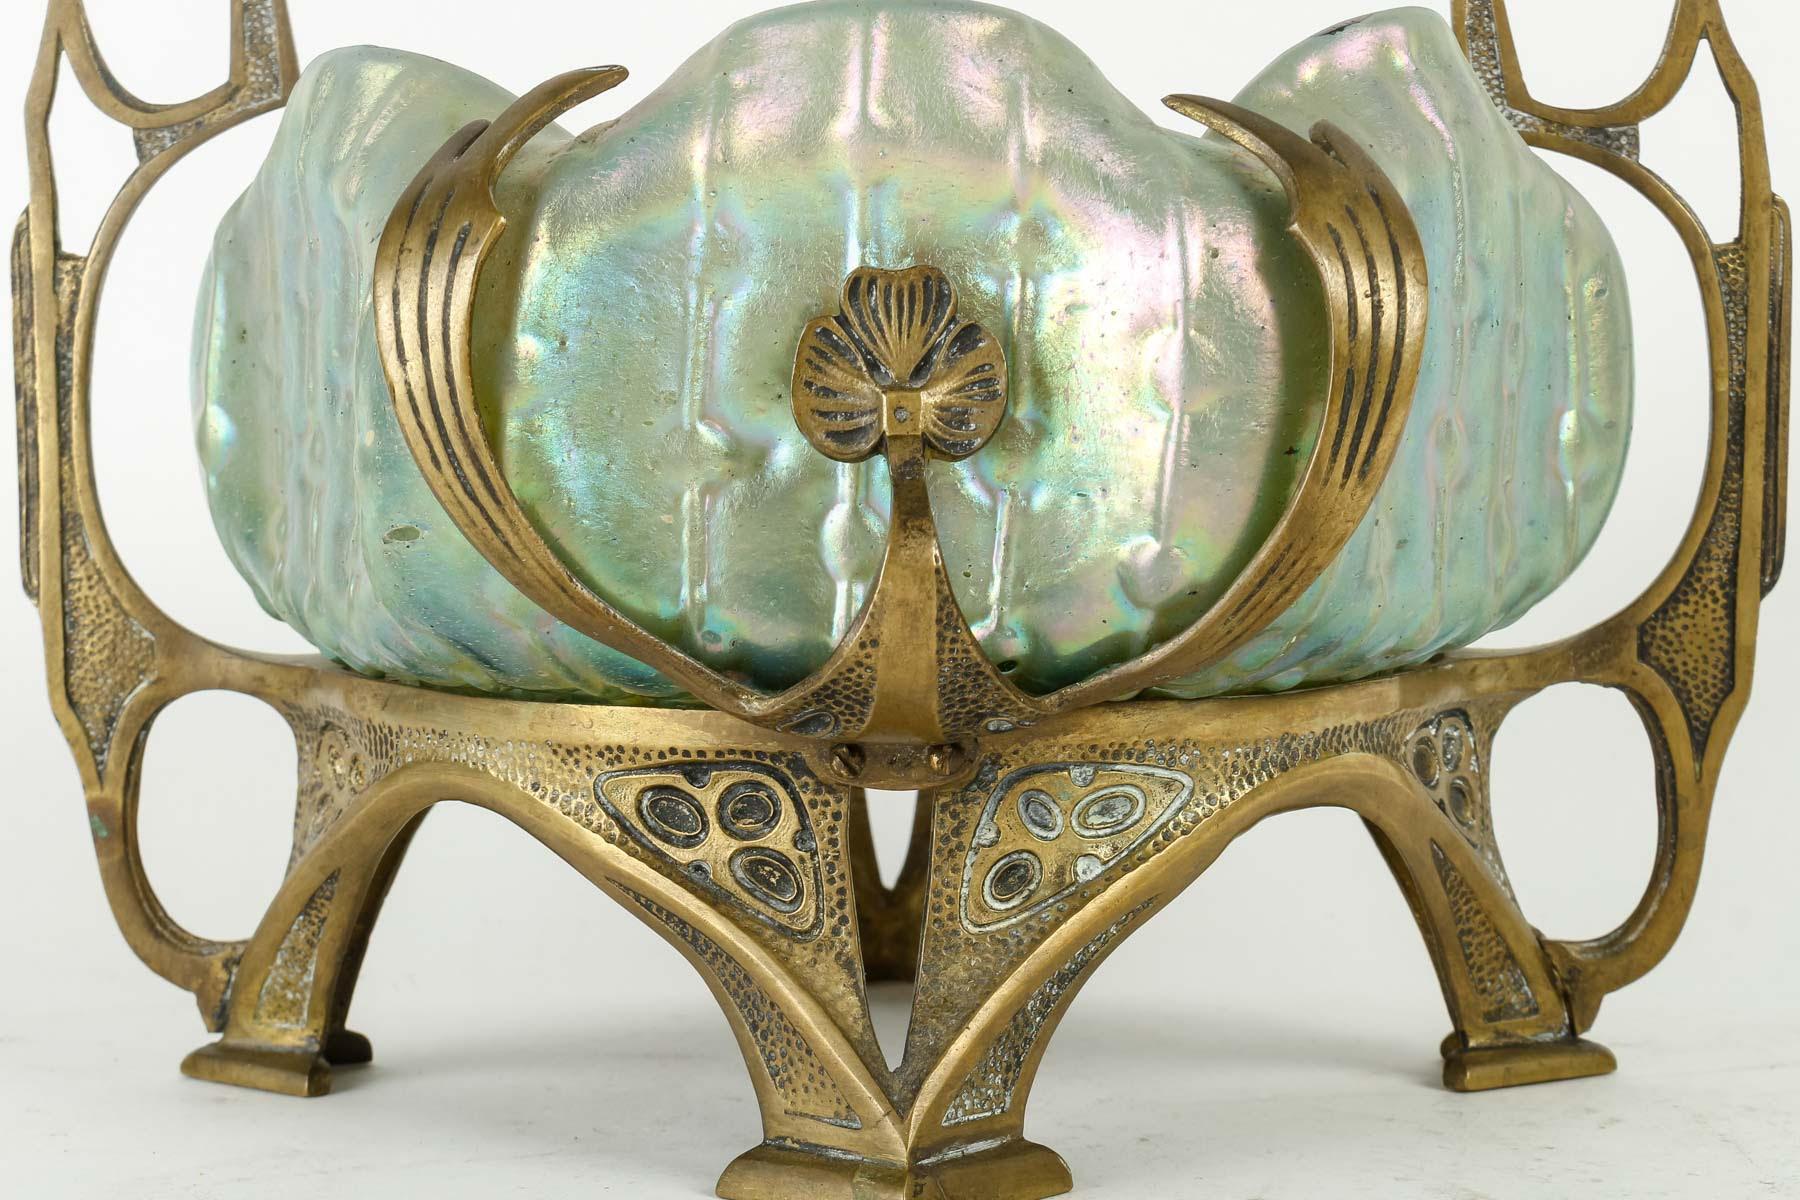 Leutz Jugendstilpokal, CIRCA 1930.

Leutz-Schale aus Bronze und irisierendem Glas, Art Deco, 1930.
H: 21,5cm, B: 25cm, T: 22cm